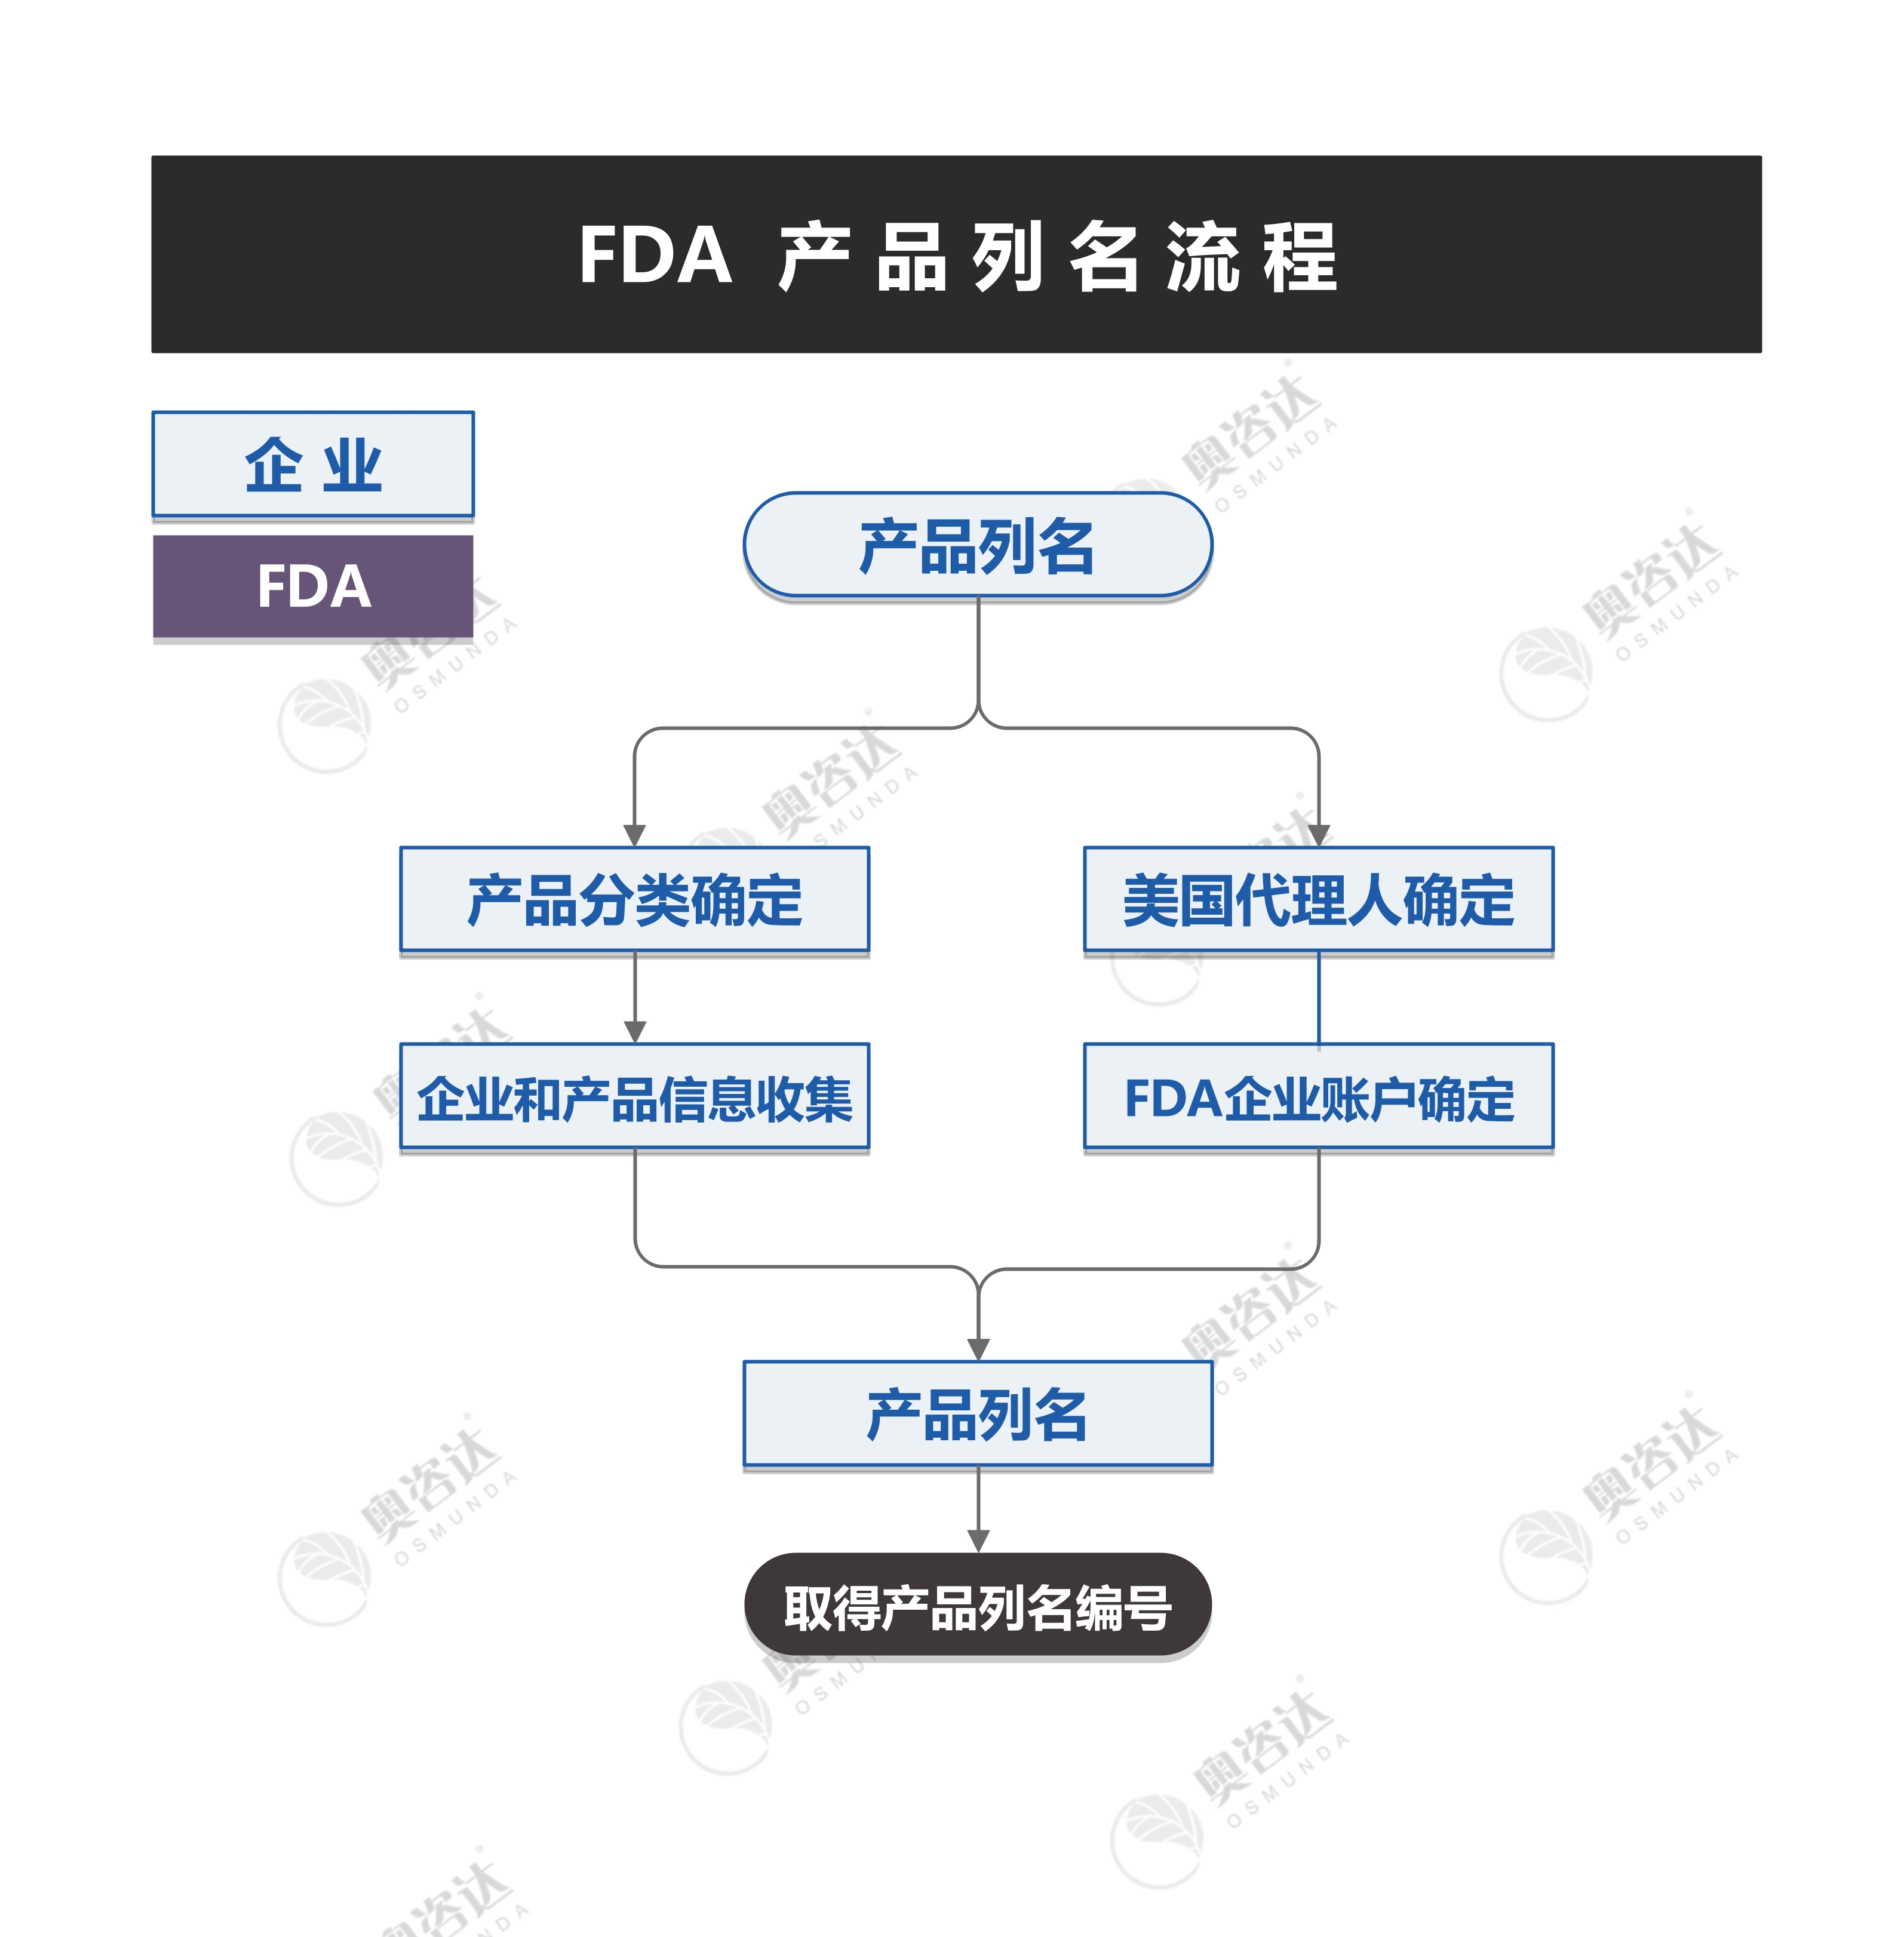 FDA-c.jpg